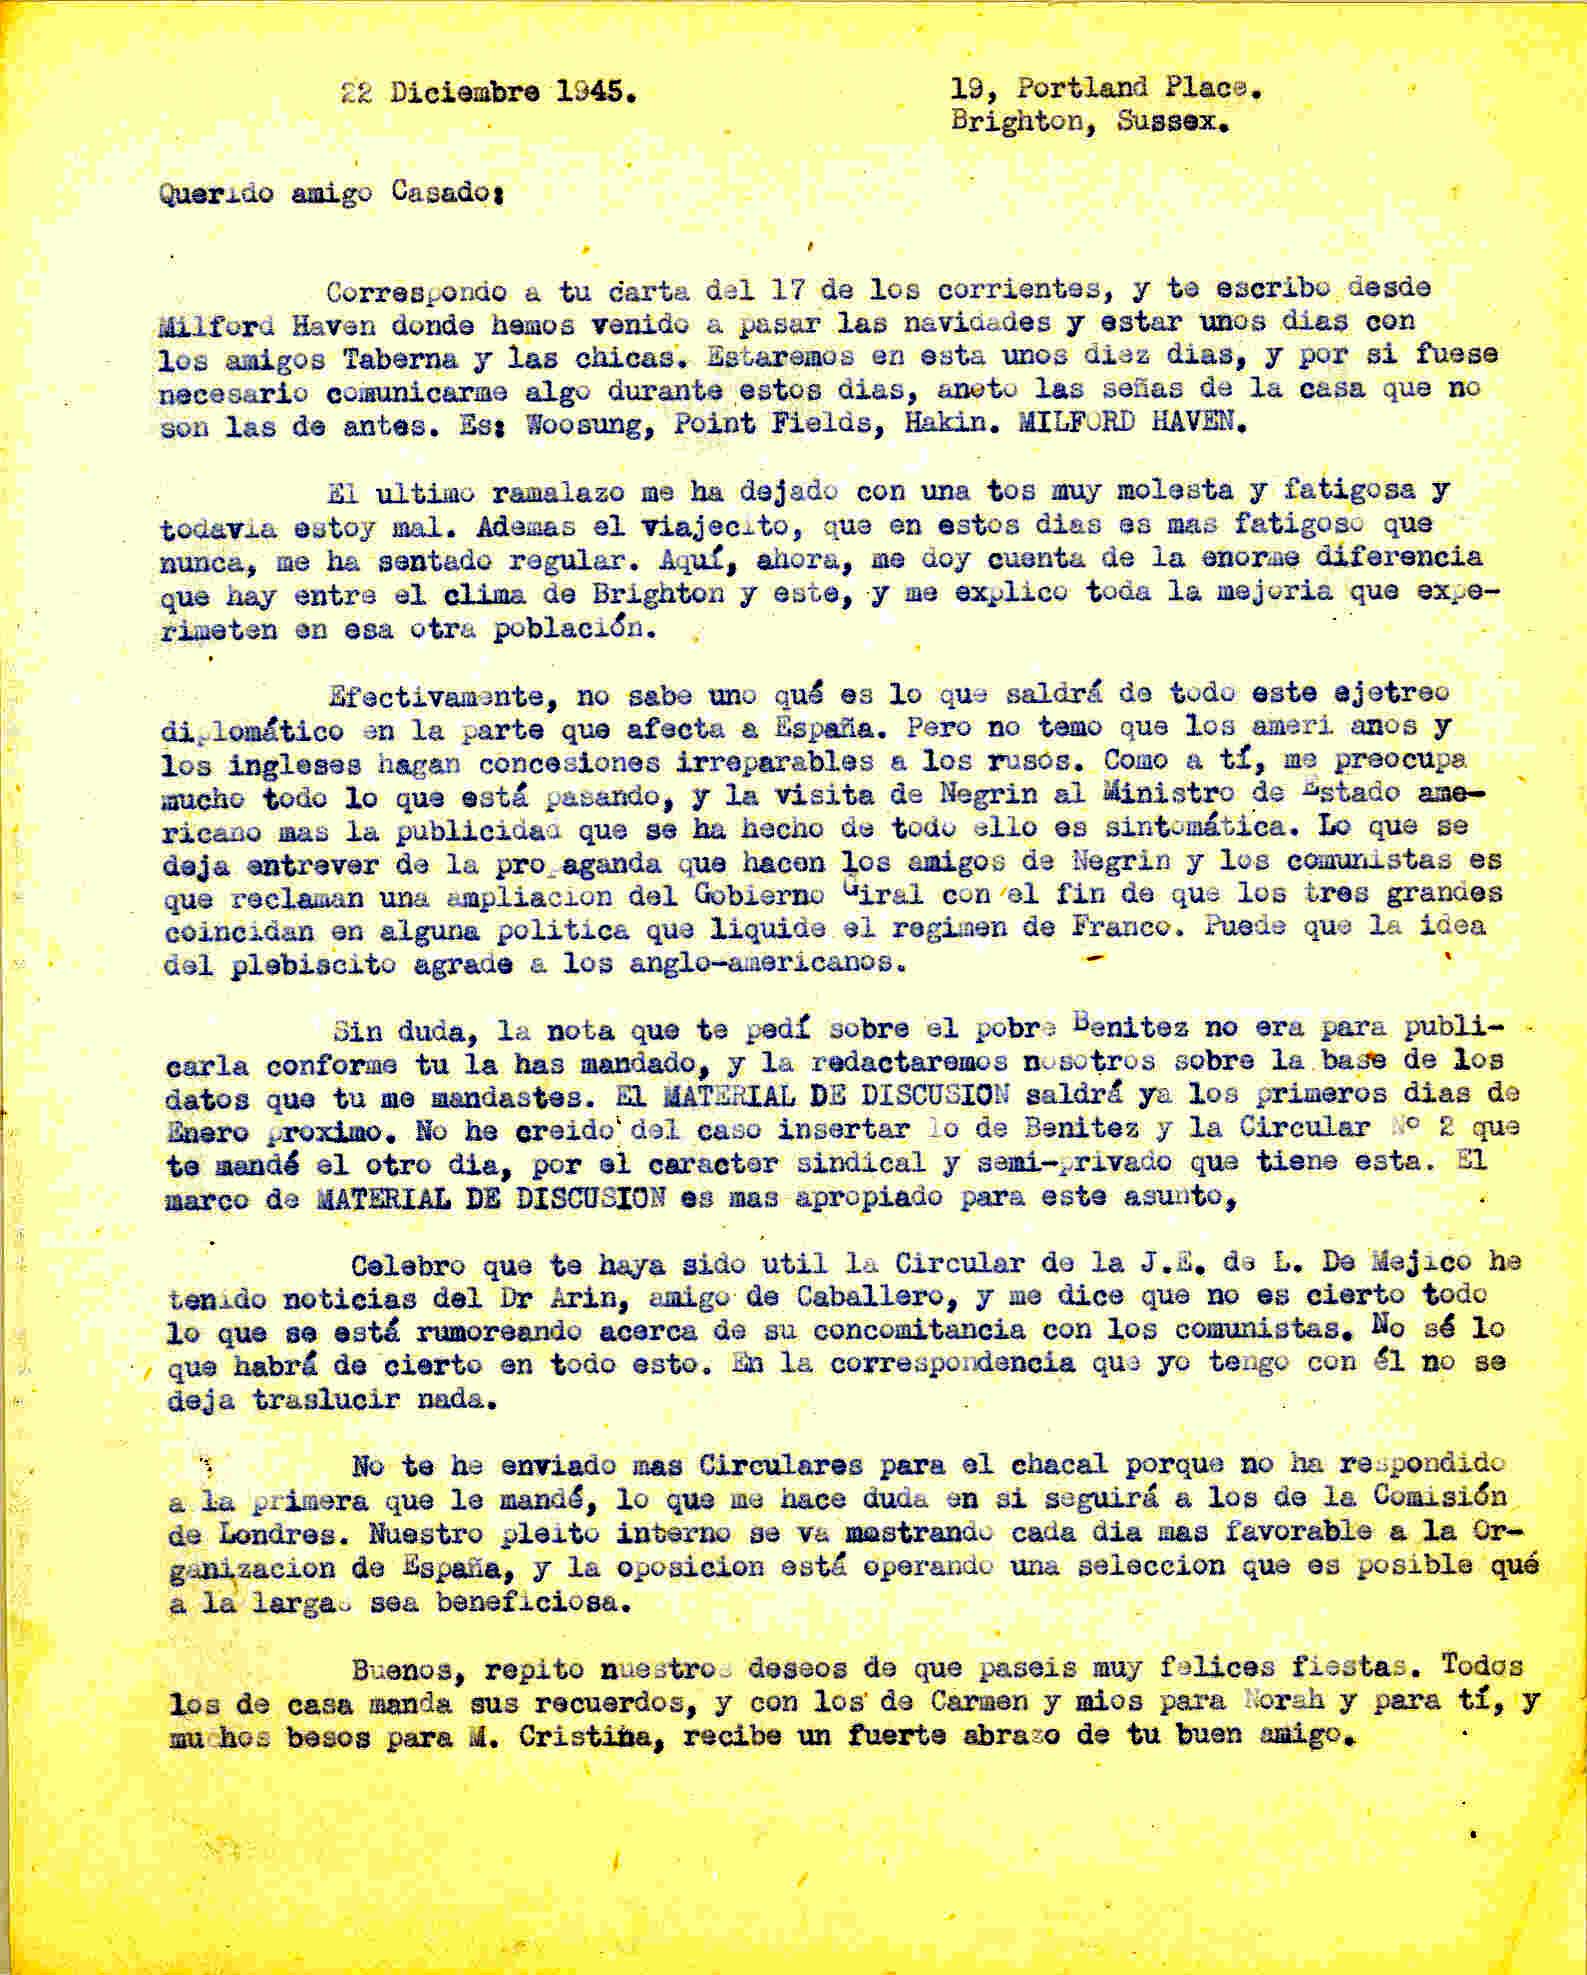 Carta a Segismundo Casado en la que habla de la propaganda que hacen los amigos de Negrín y los comunistas, que reclaman una ampliación del Gobierno Giral para liquidar el rágimen de Franco.